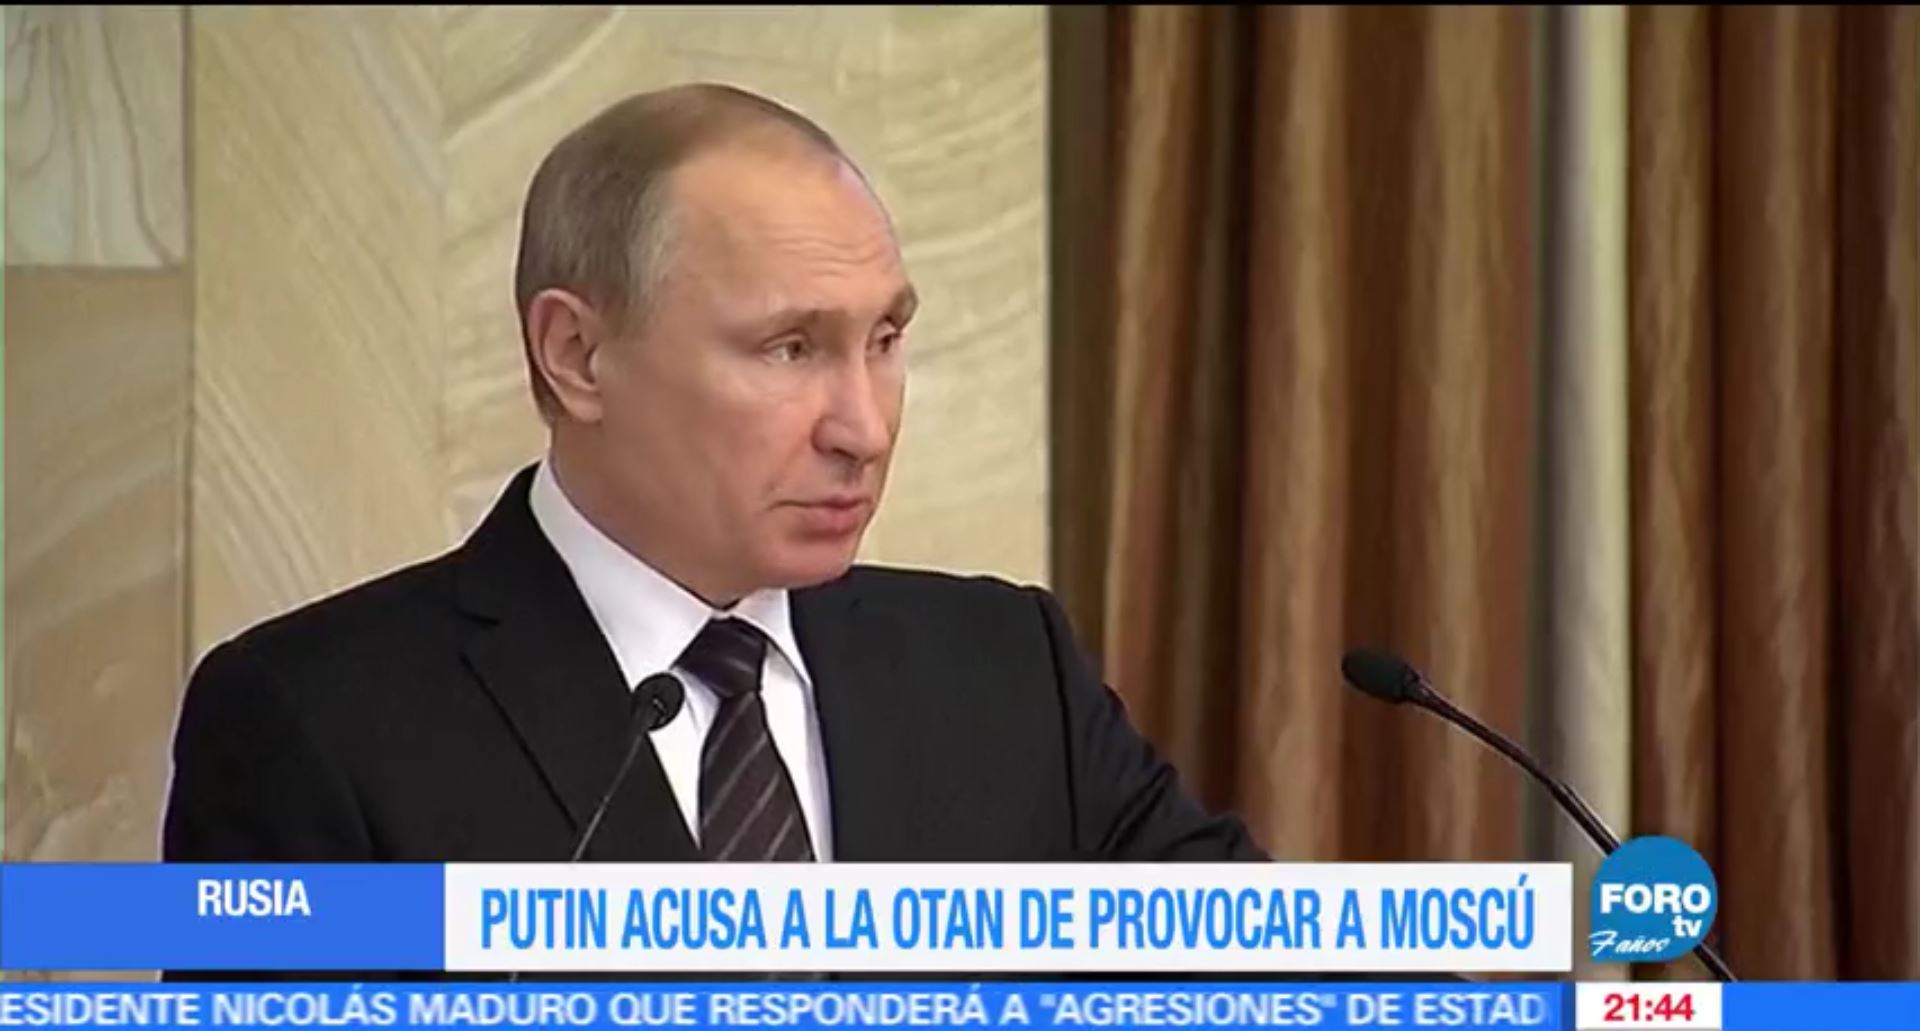 Vladimir Putin acusa a la OTAN de provocar a Moscú